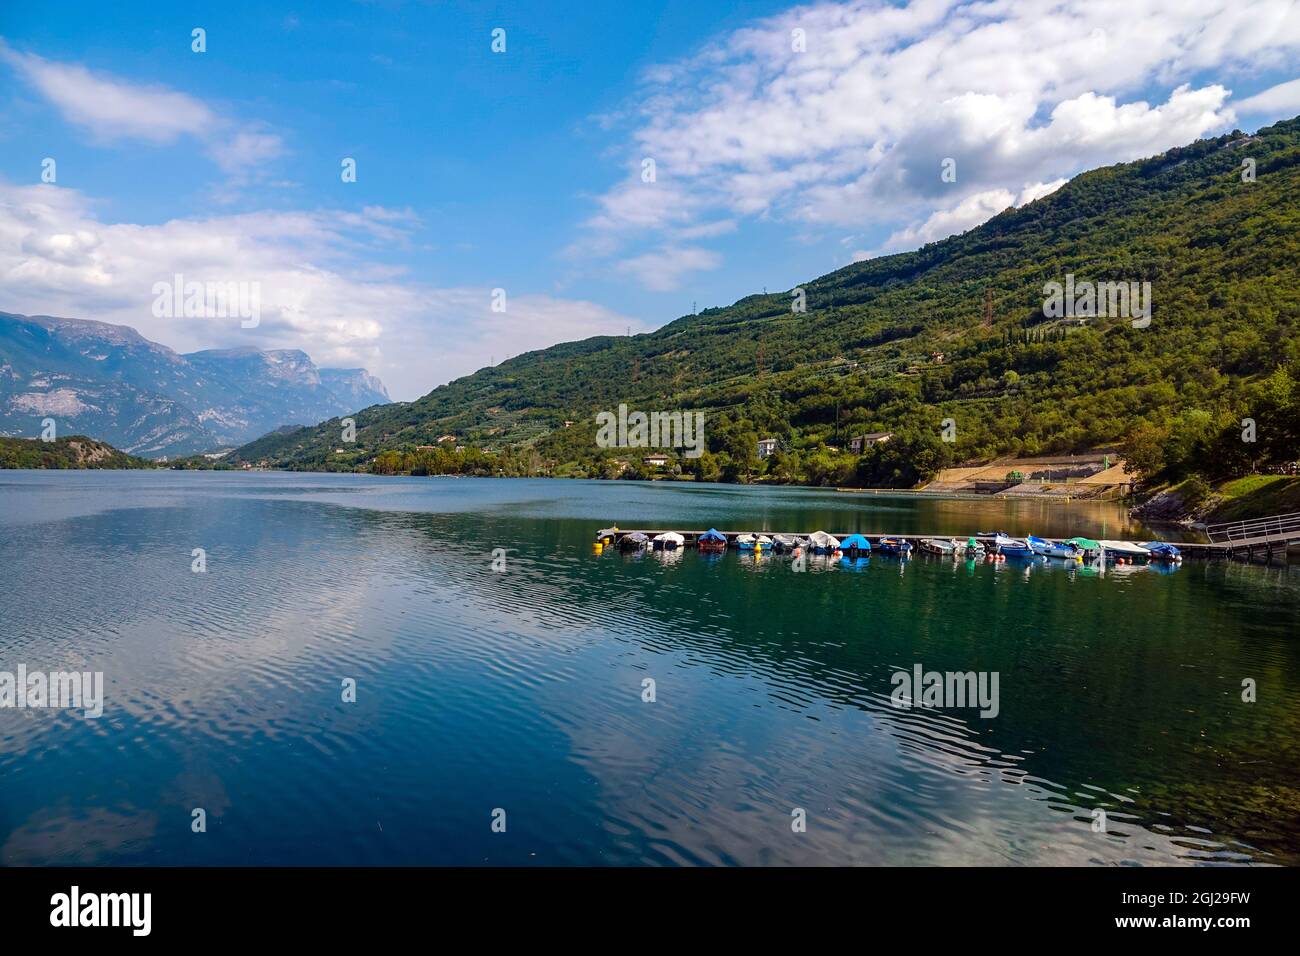 Pontile e piccole imbarcazioni a destinazione turistica del Lago di Cavedine, Lago di Cavedine, Trento, Trentino, Laghi italiani, Italia Foto Stock